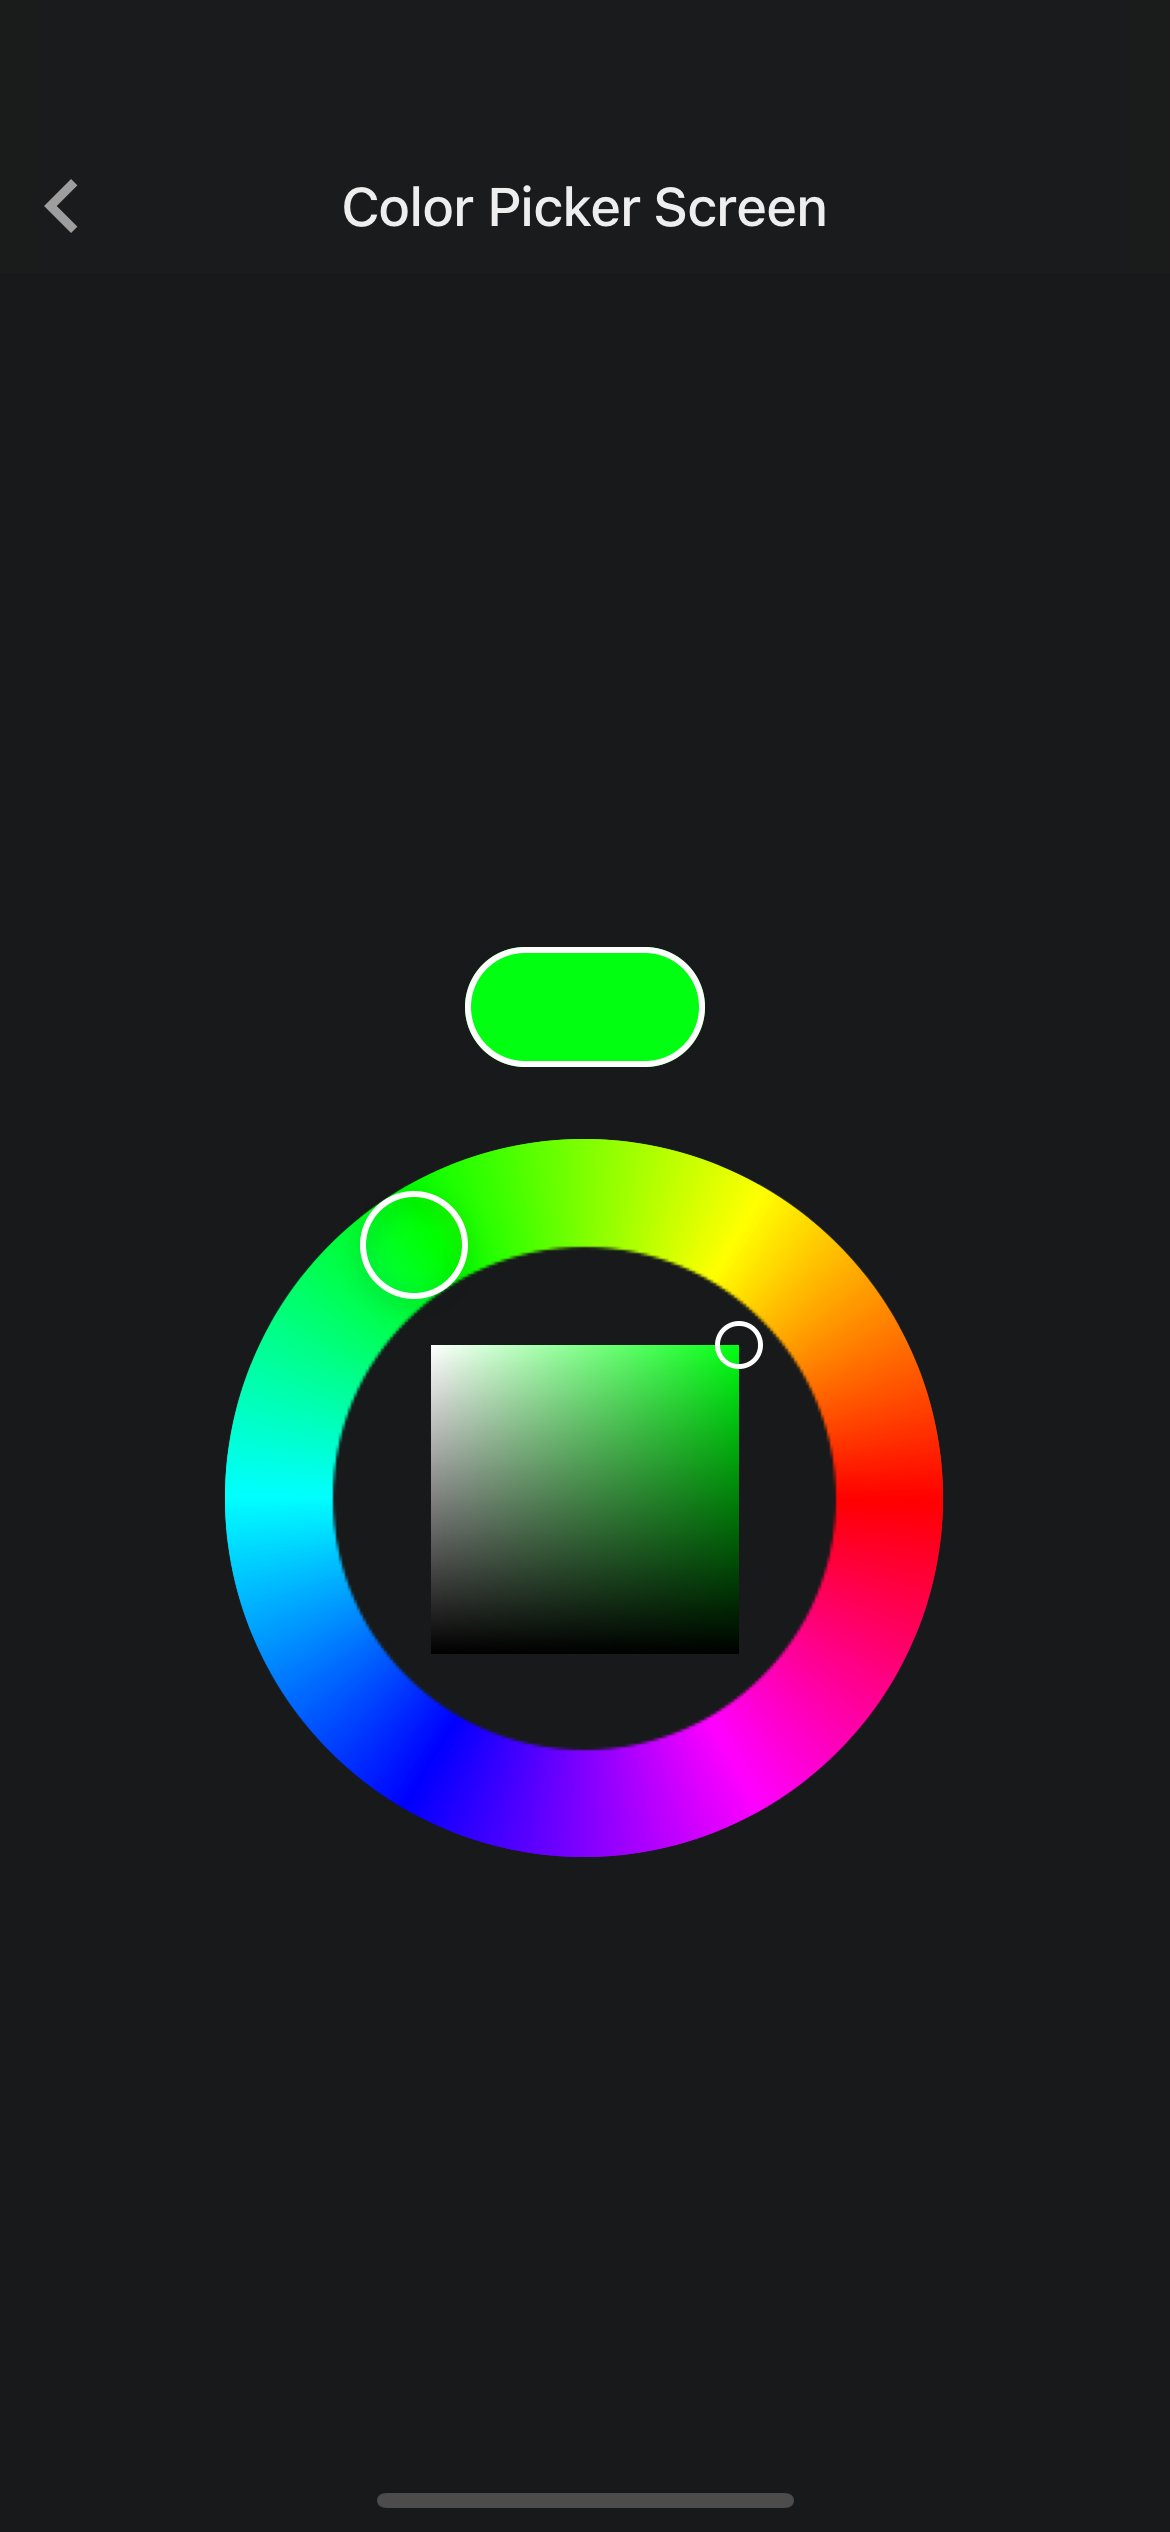 Khám phá tính năng lựa chọn màu sắc tiên tiến của React Native cho ứng dụng của bạn! Xem hình ảnh liên quan để hiểu rõ hơn về khả năng lựa chọn màu sắc và cách tích hợp chúng vào dự án React Native của bạn.